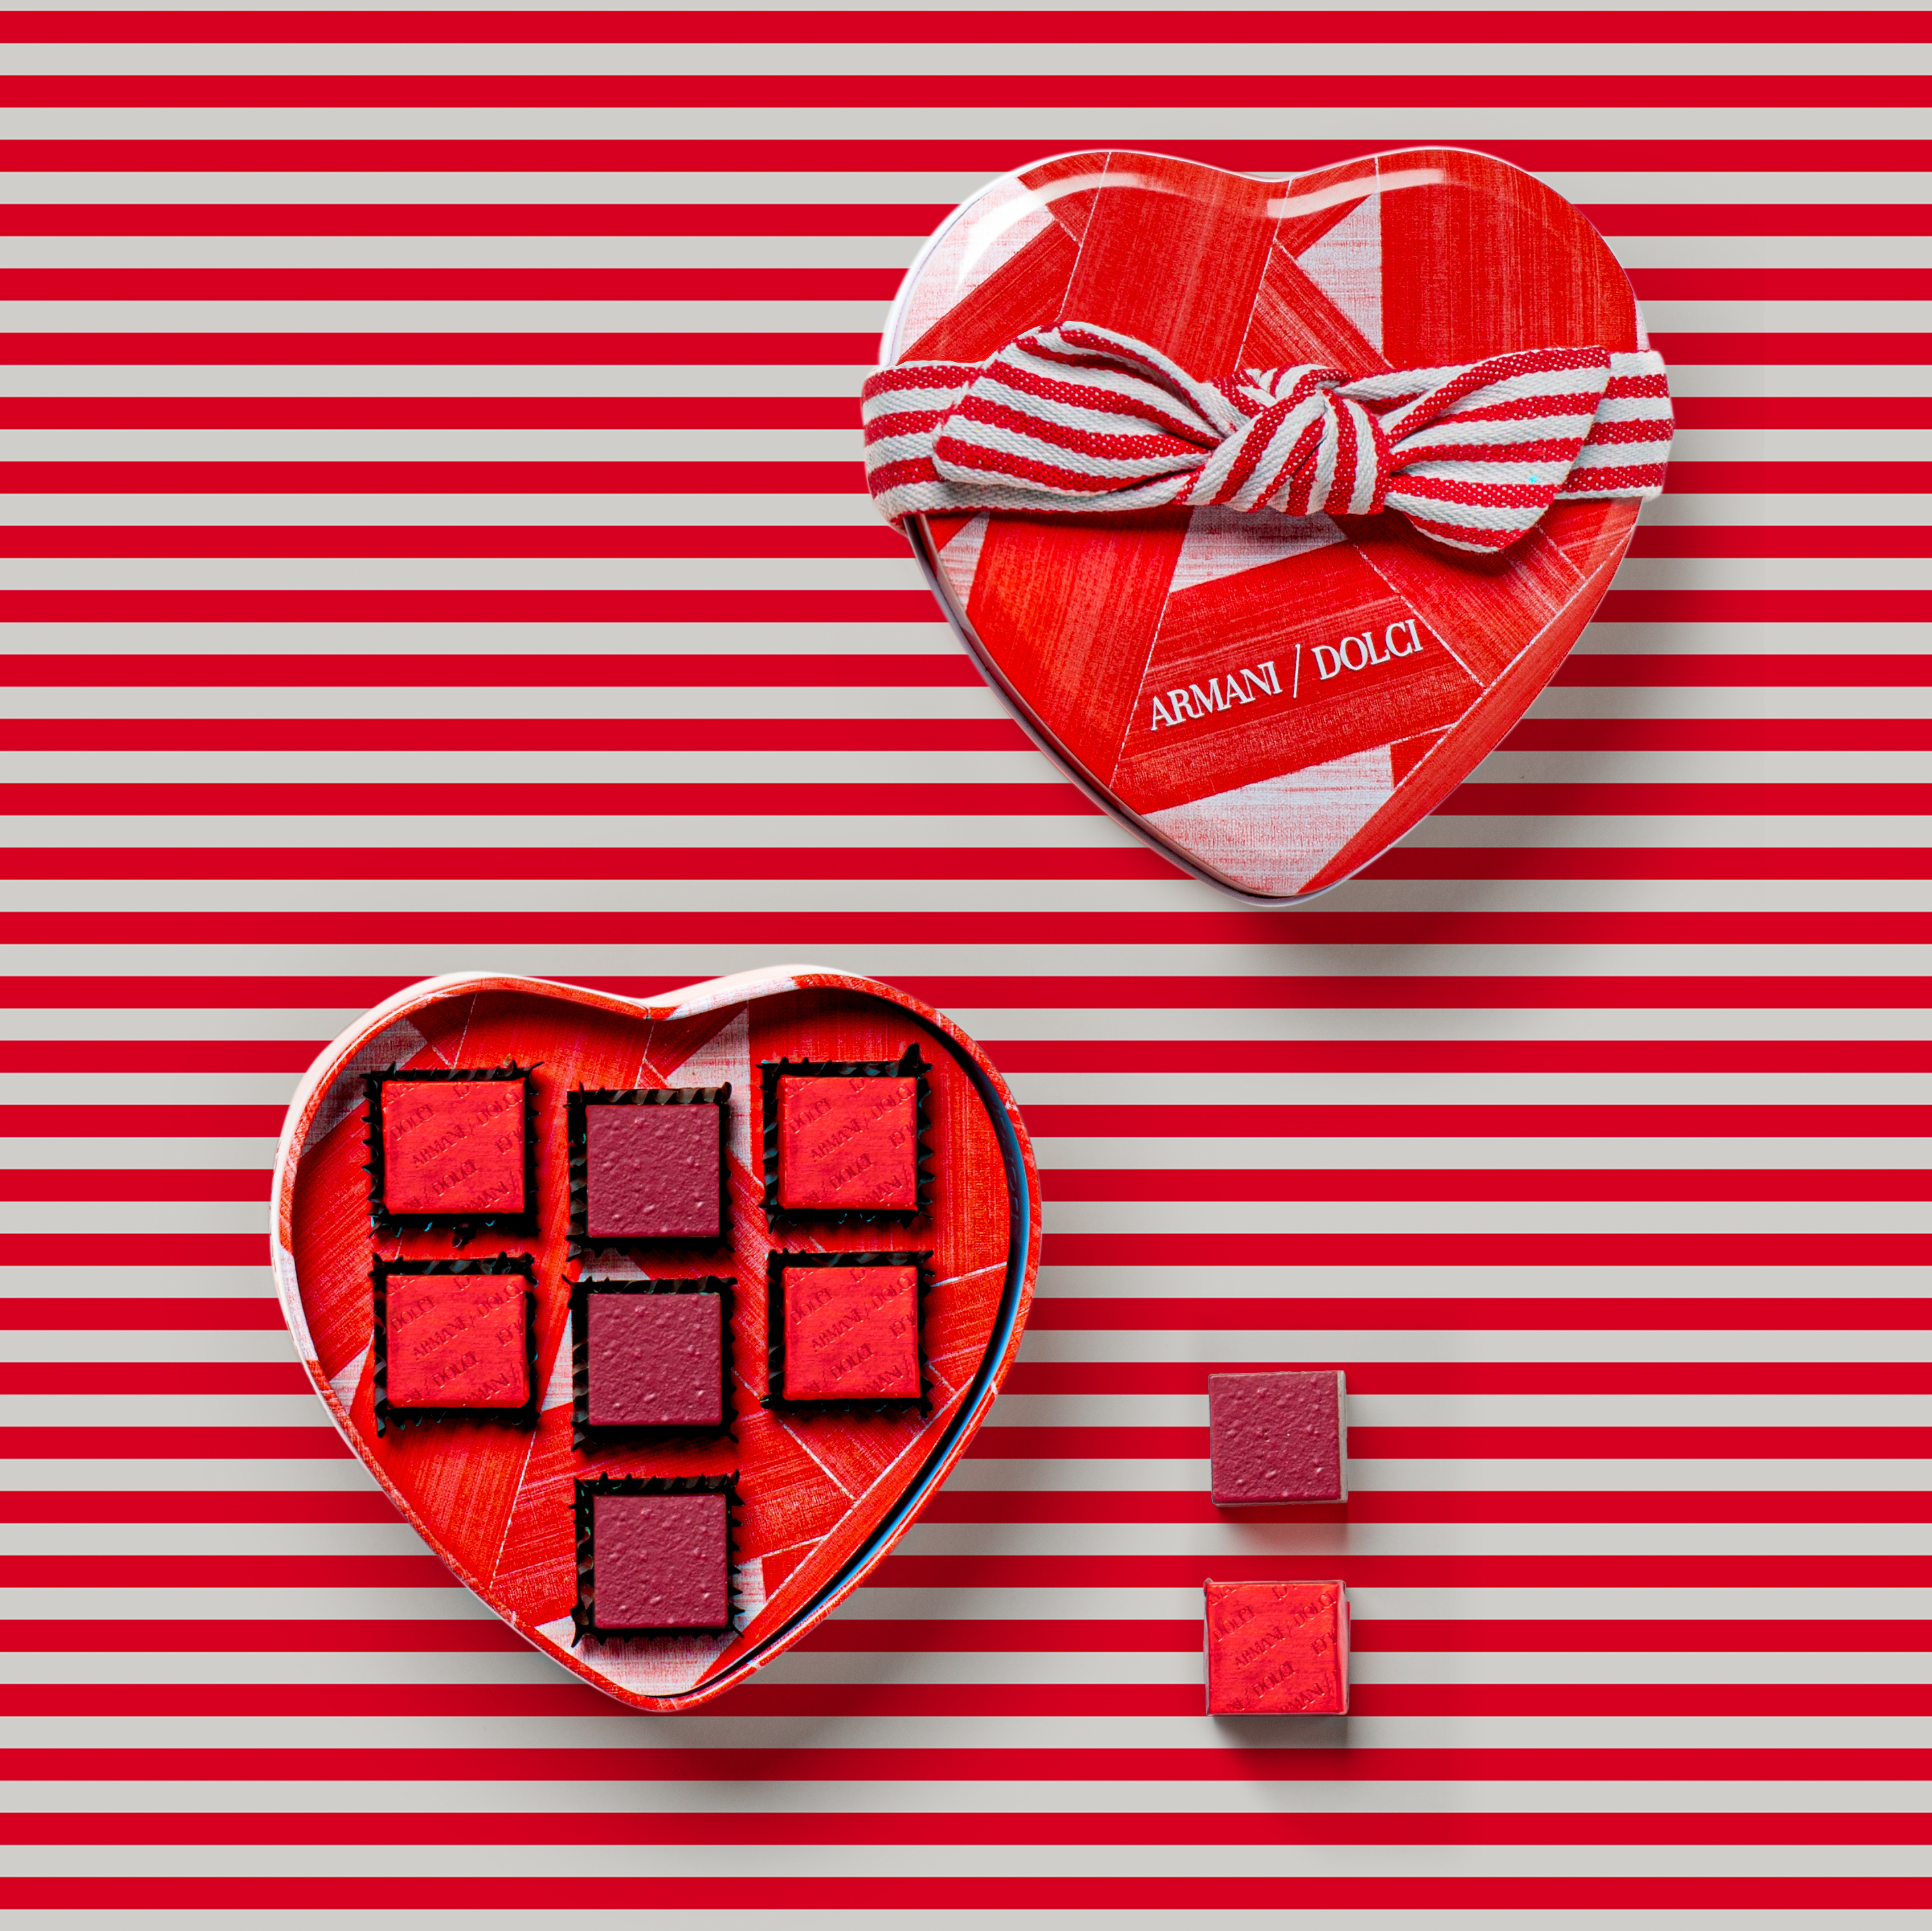 アルマーニ ドルチ 毎年行列ができるアルマーニのバレンタインチョコレートが今年も登場 ジョルジオ アルマーニ ジャパン 株式会社のプレスリリース